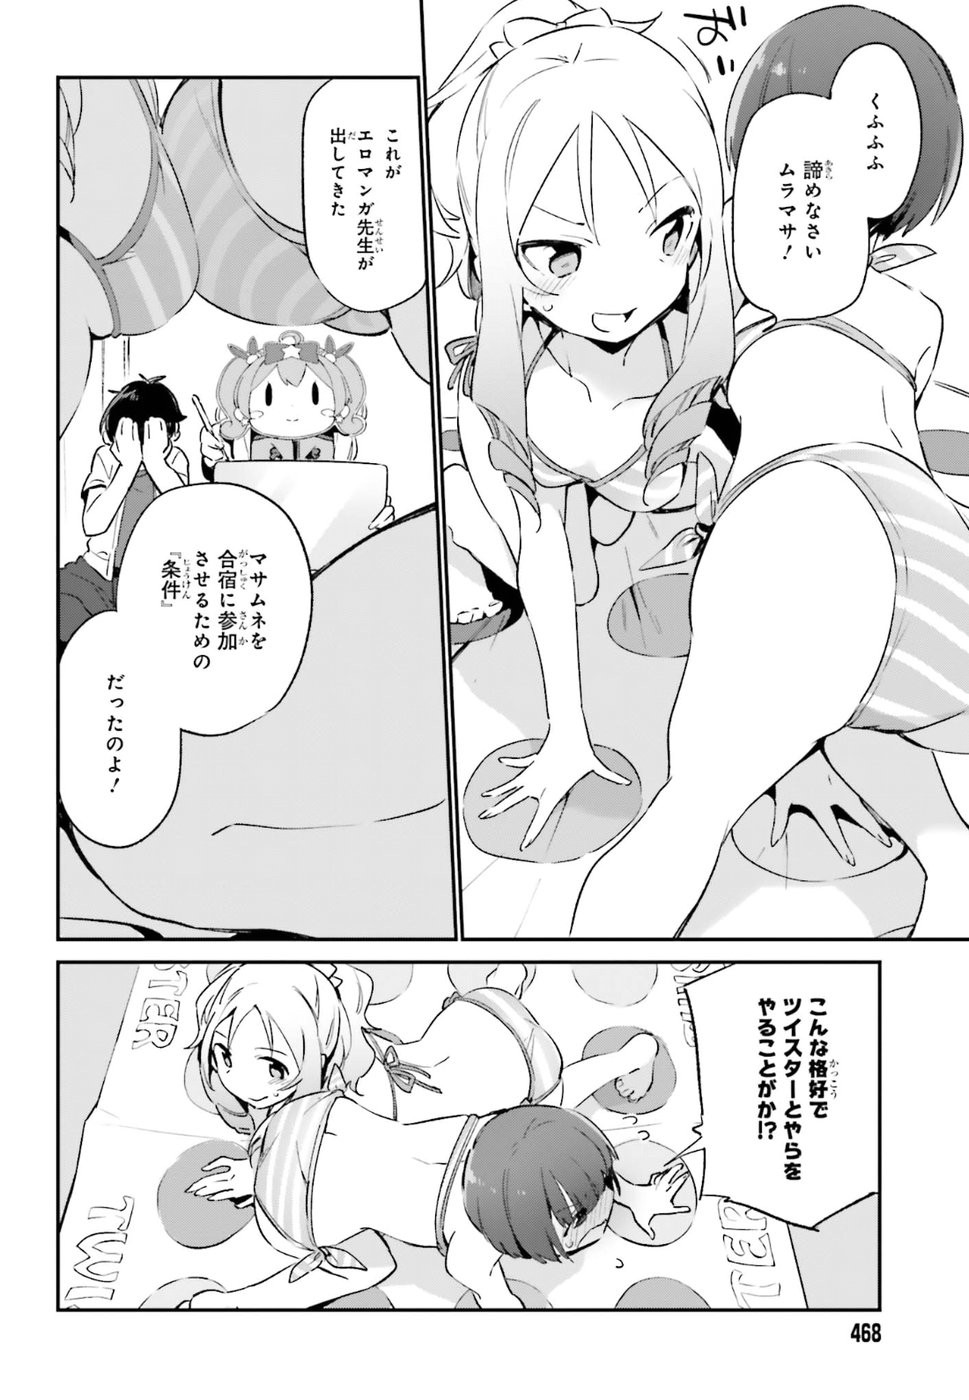 Ero Manga Sensei - Chapter 37 - Page 2